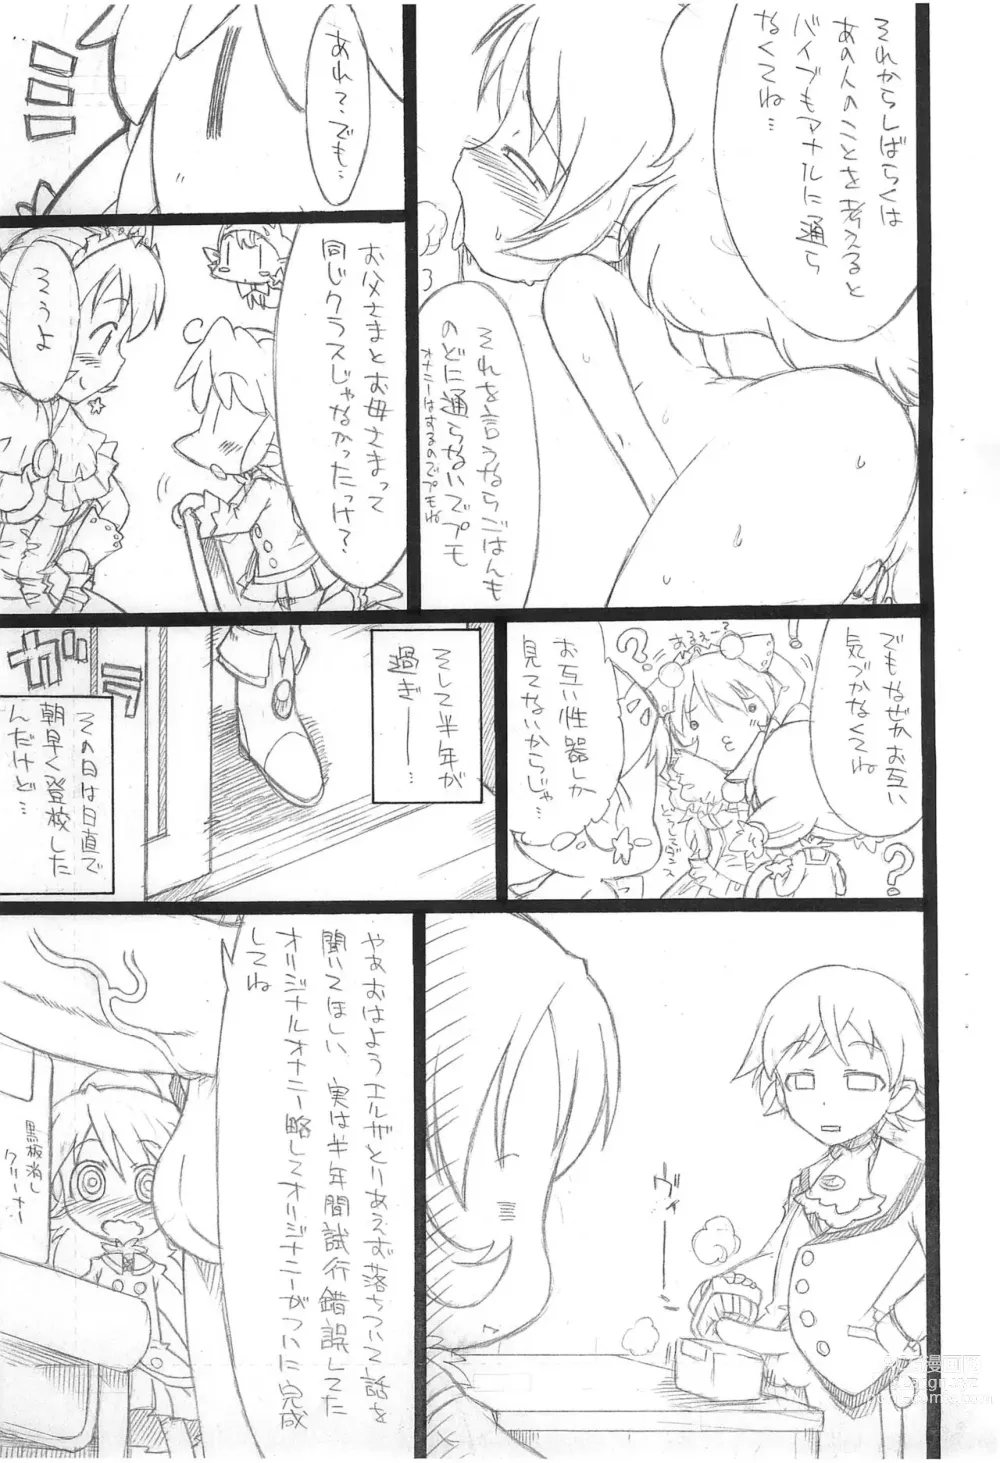 Page 5 of doujinshi Kodomo ja (Ryaku) 3 1/2